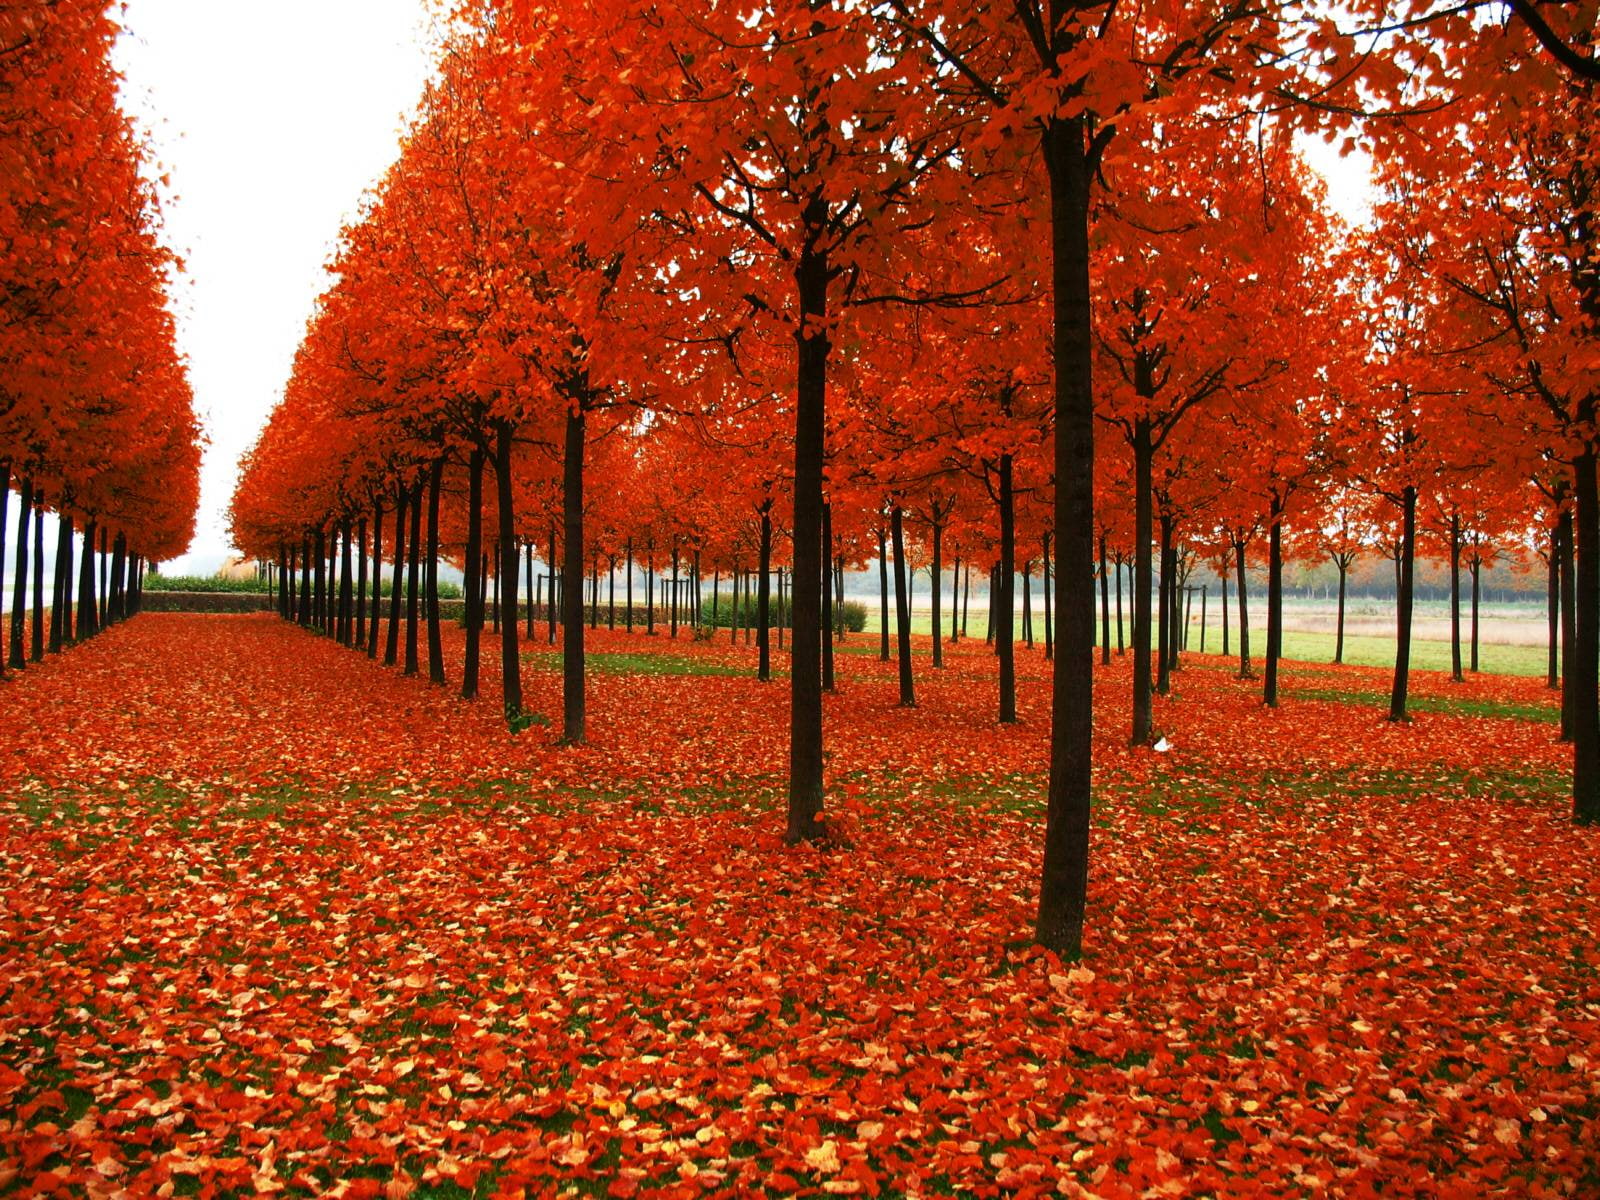 Rows of Autumn Trees, change, plant, orange color, leaf, plant part